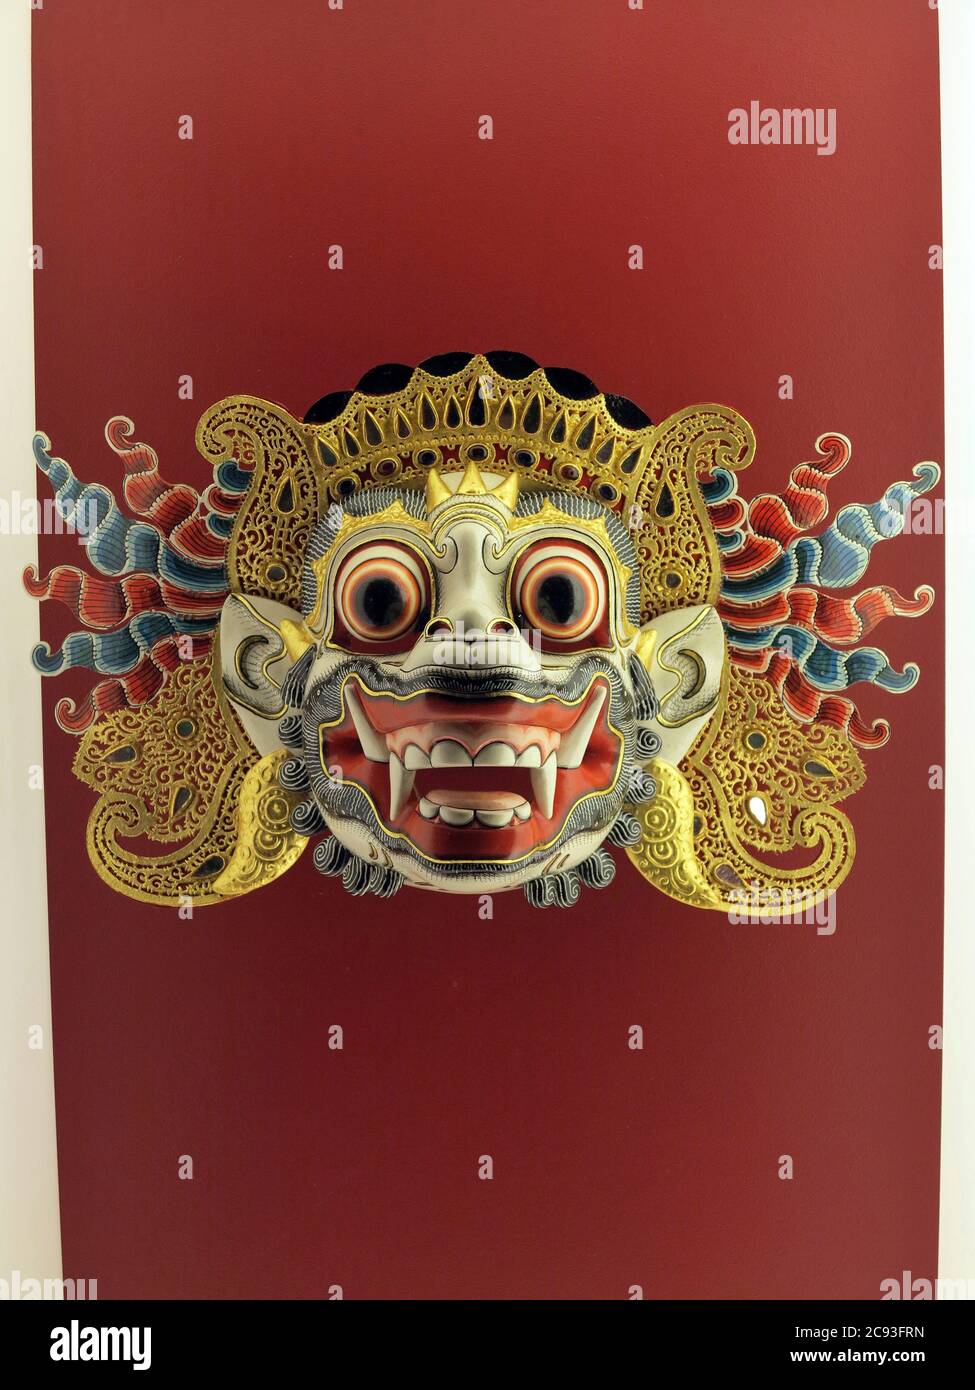 Bali, Indonesien - 26. Okt 2014 - Bunte bali Maske auf rotem Hintergrund Stockfoto